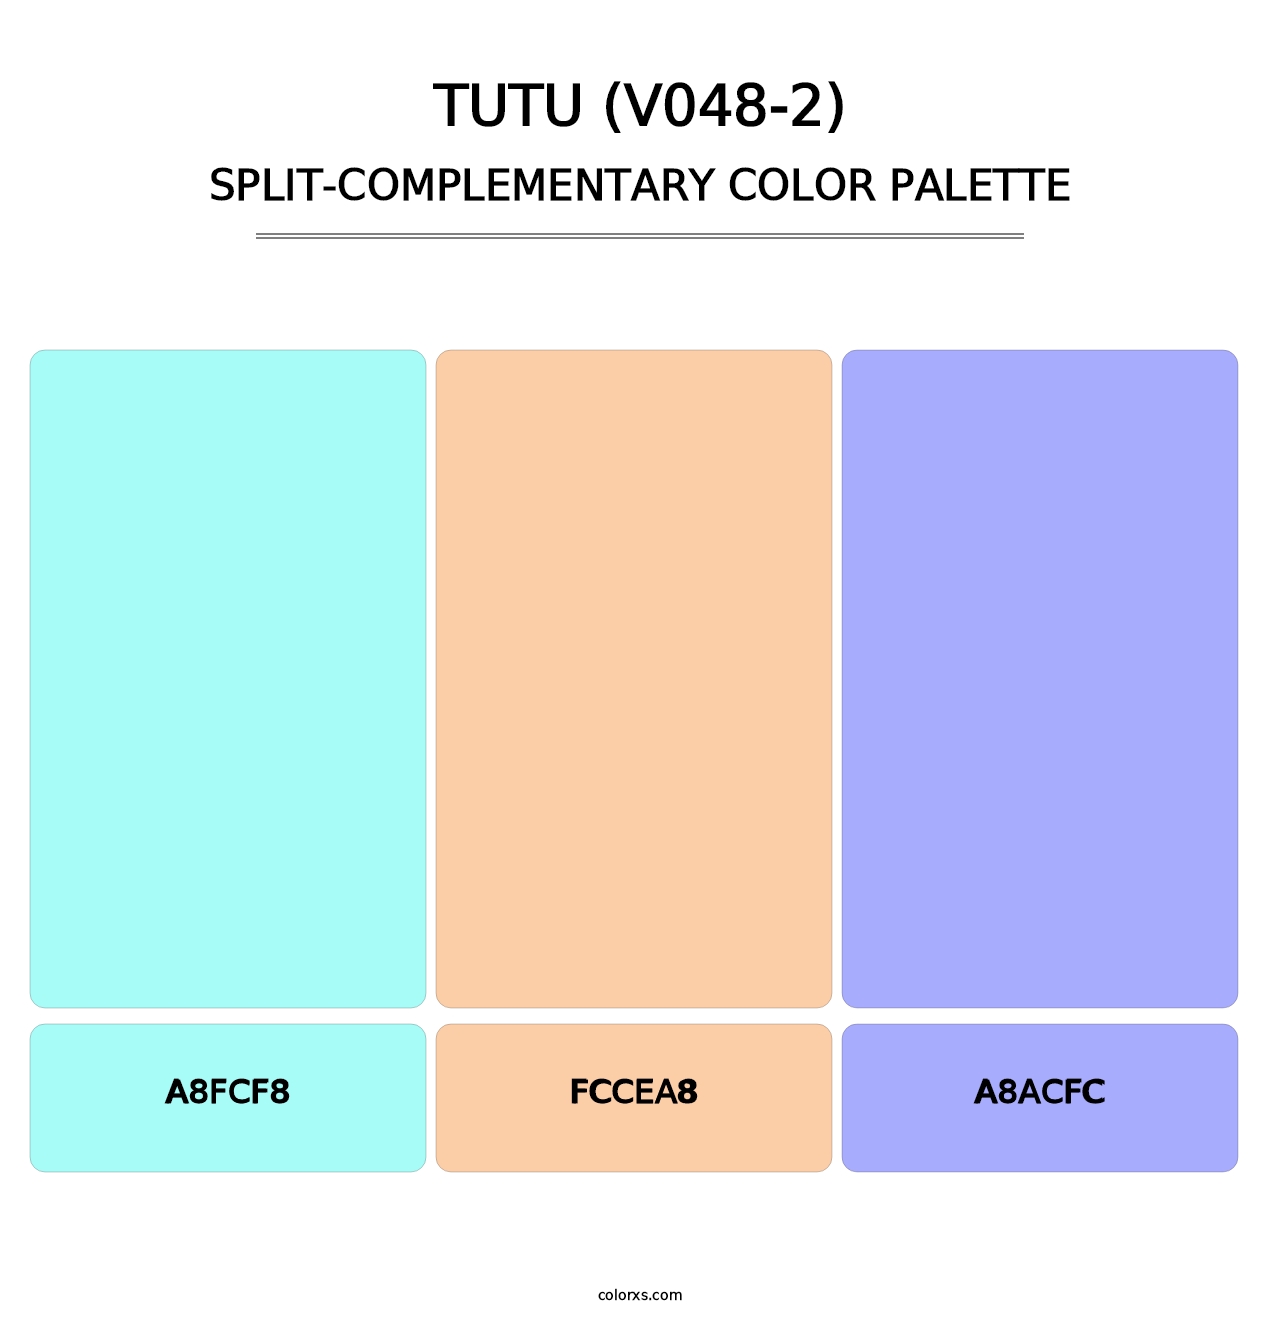 Tutu (V048-2) - Split-Complementary Color Palette